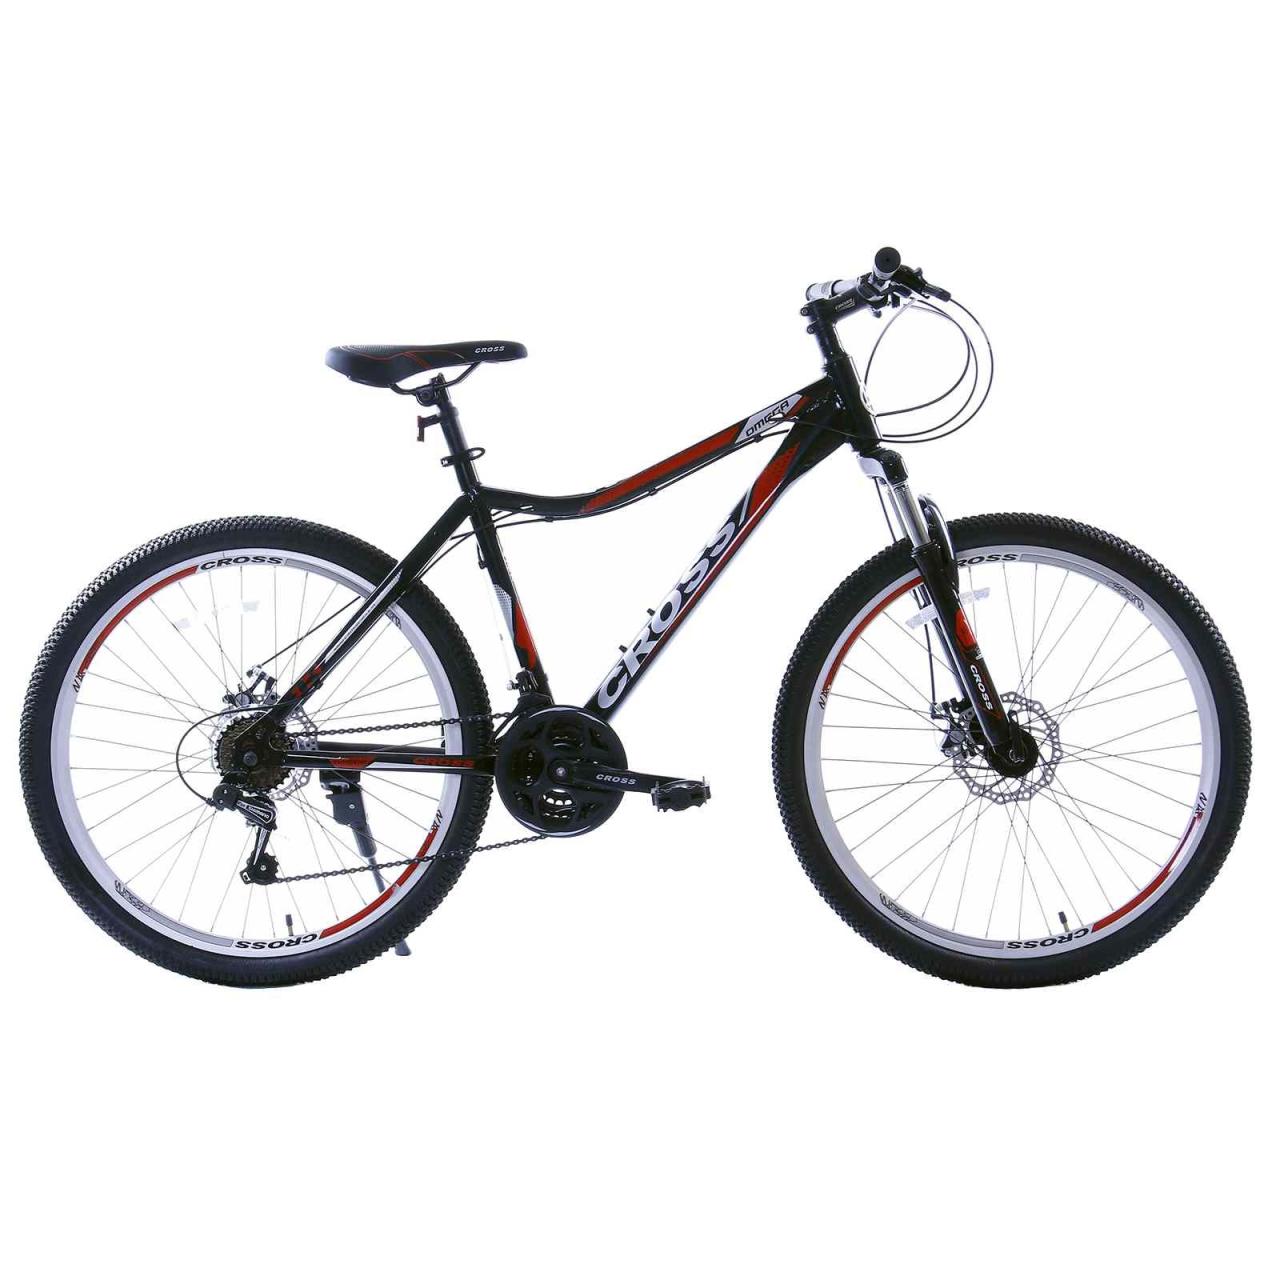 دوچرخه کوهستان-Mountain bicycle کراس-Cross دوچرخه کوهستان مدل OMEGA سایز 26